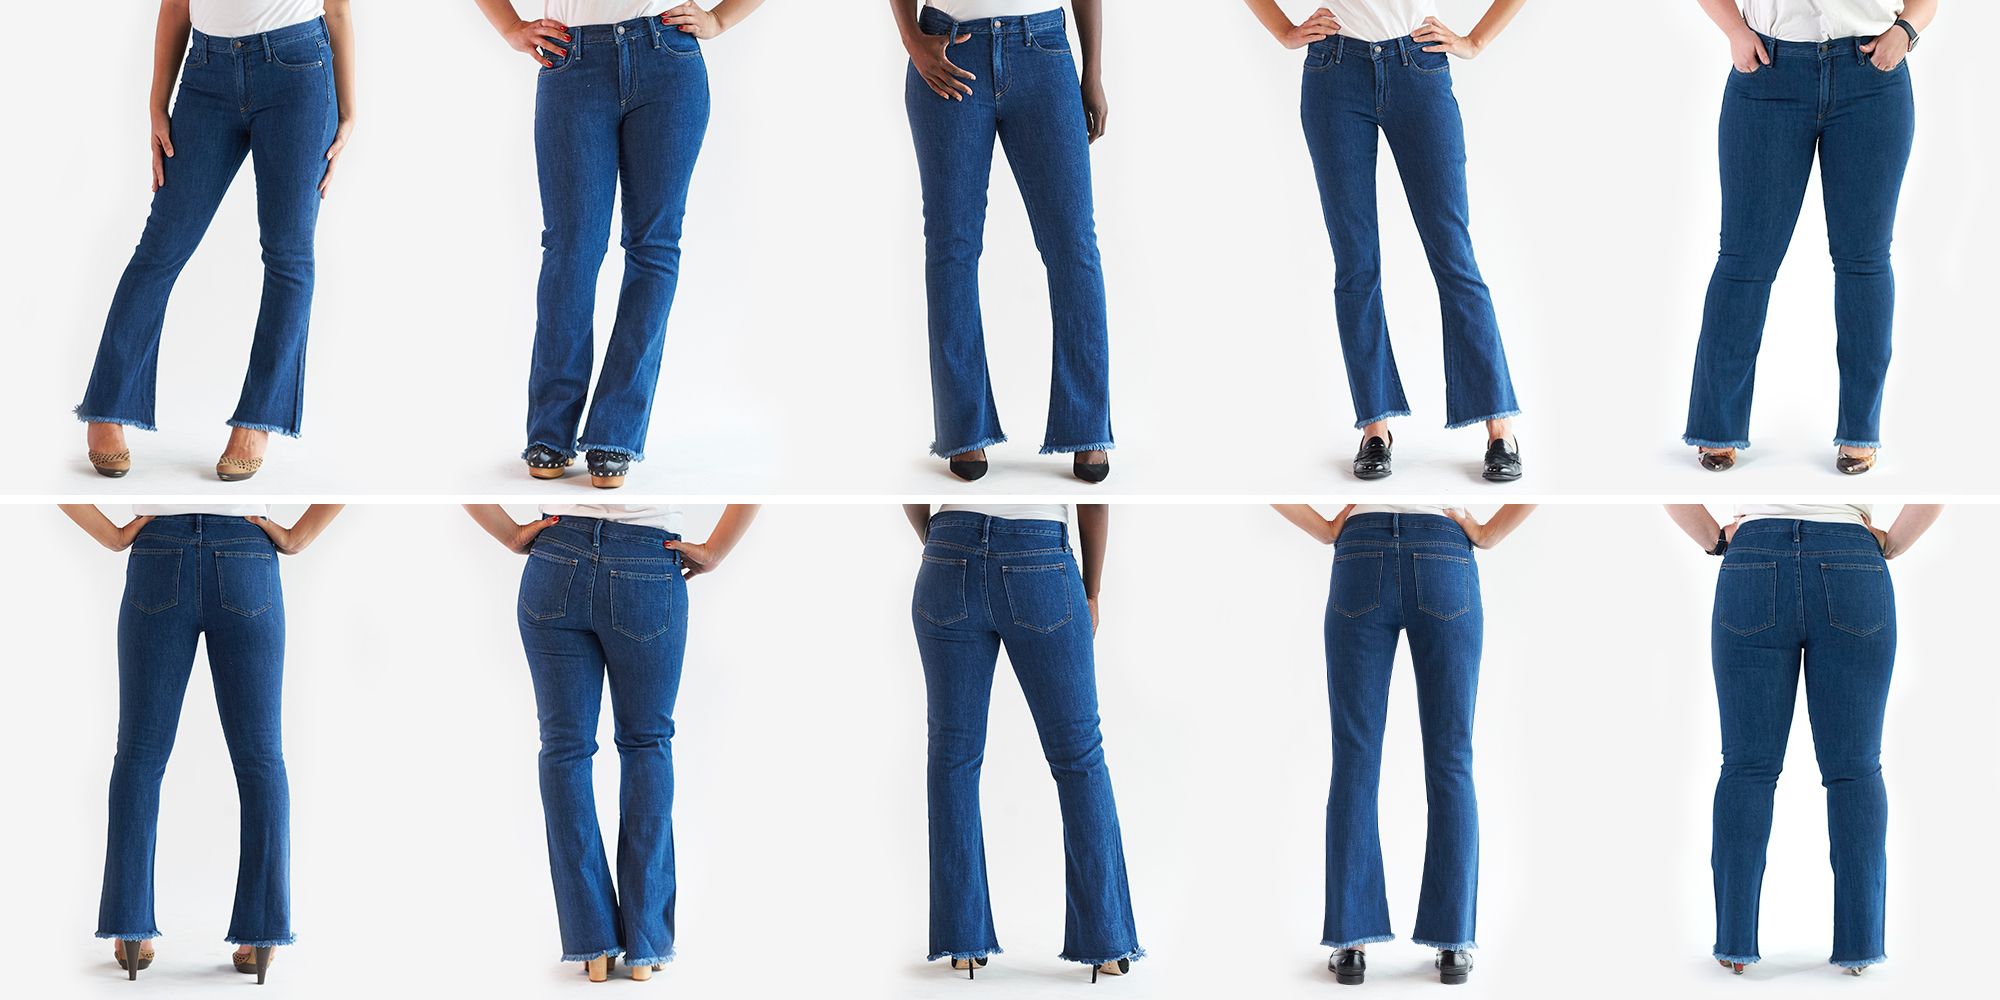 Women's Jeans, Women's Jeans